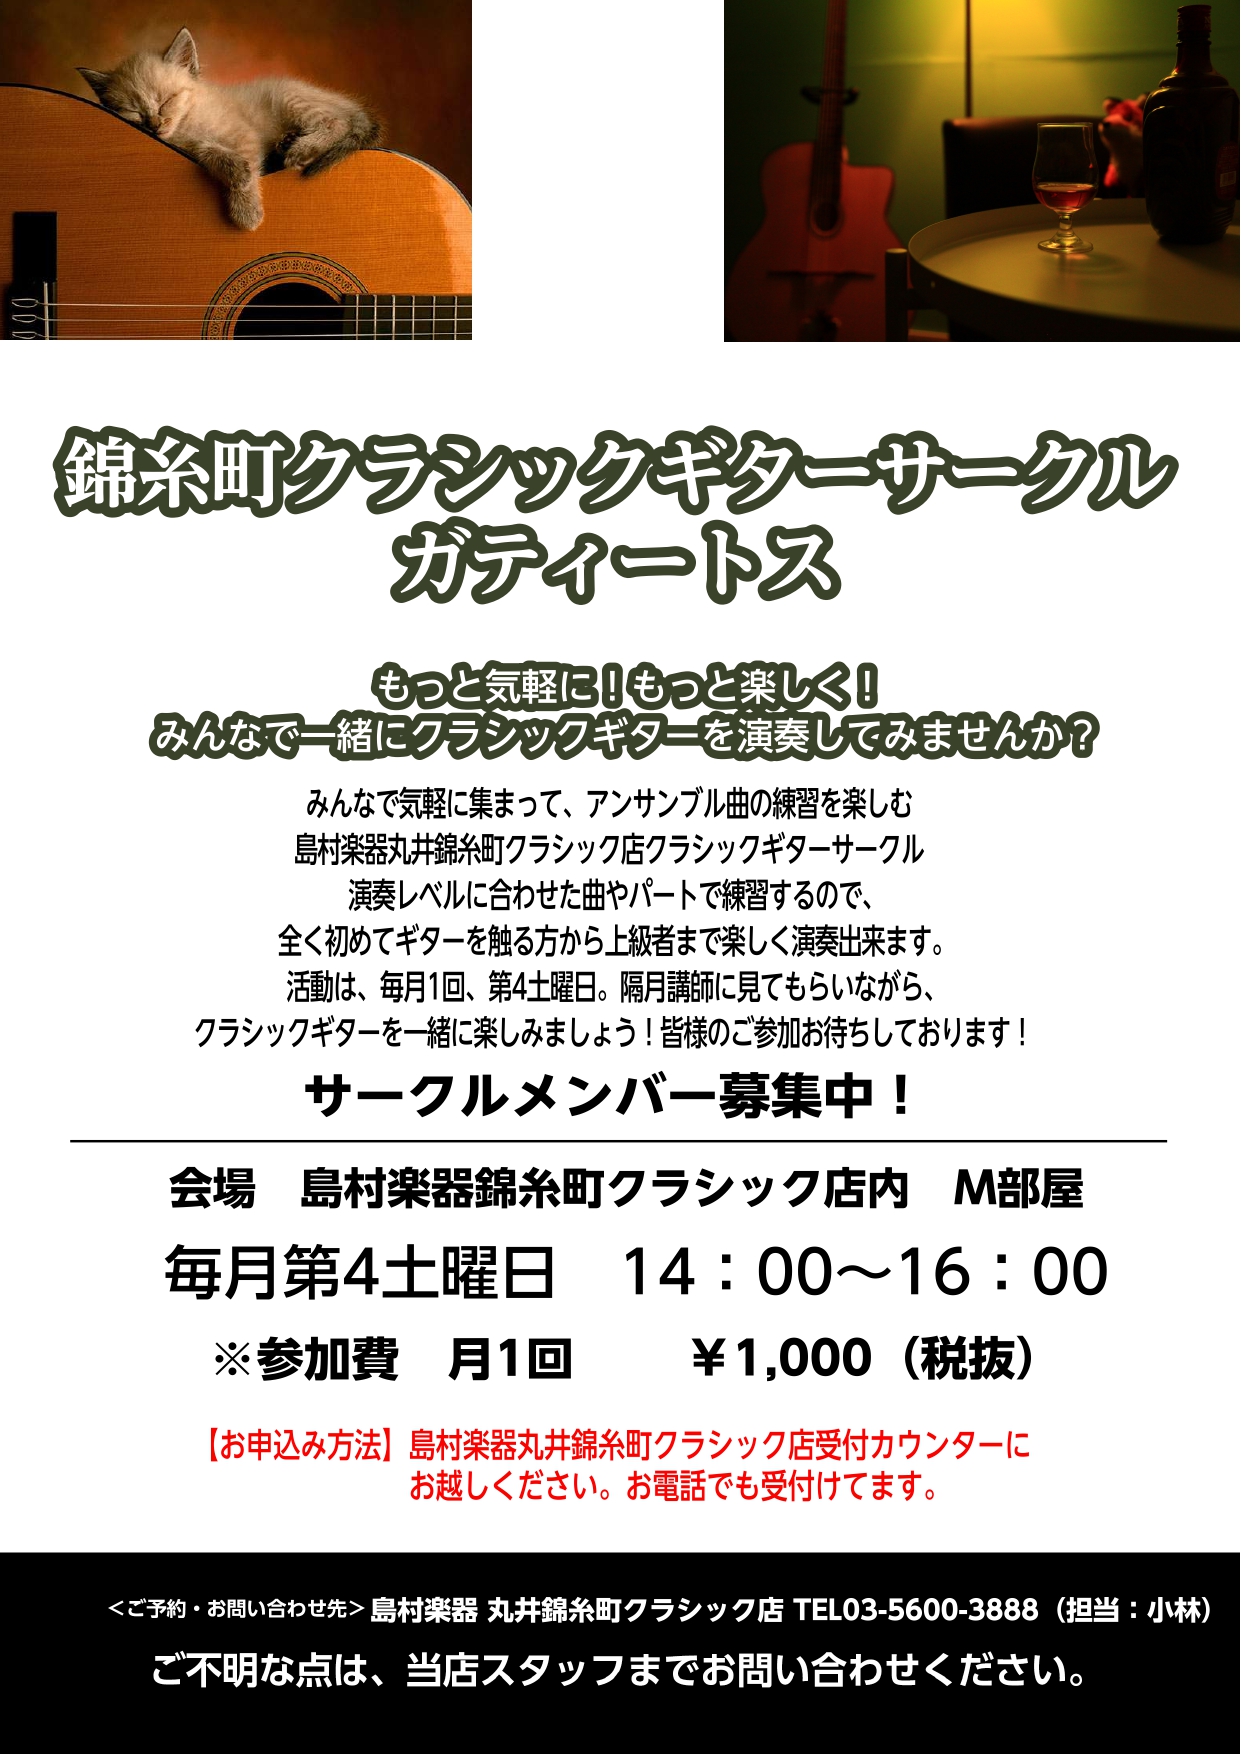 丸井錦糸町クラシック店のクラシックギターサークル新規開設のご案内